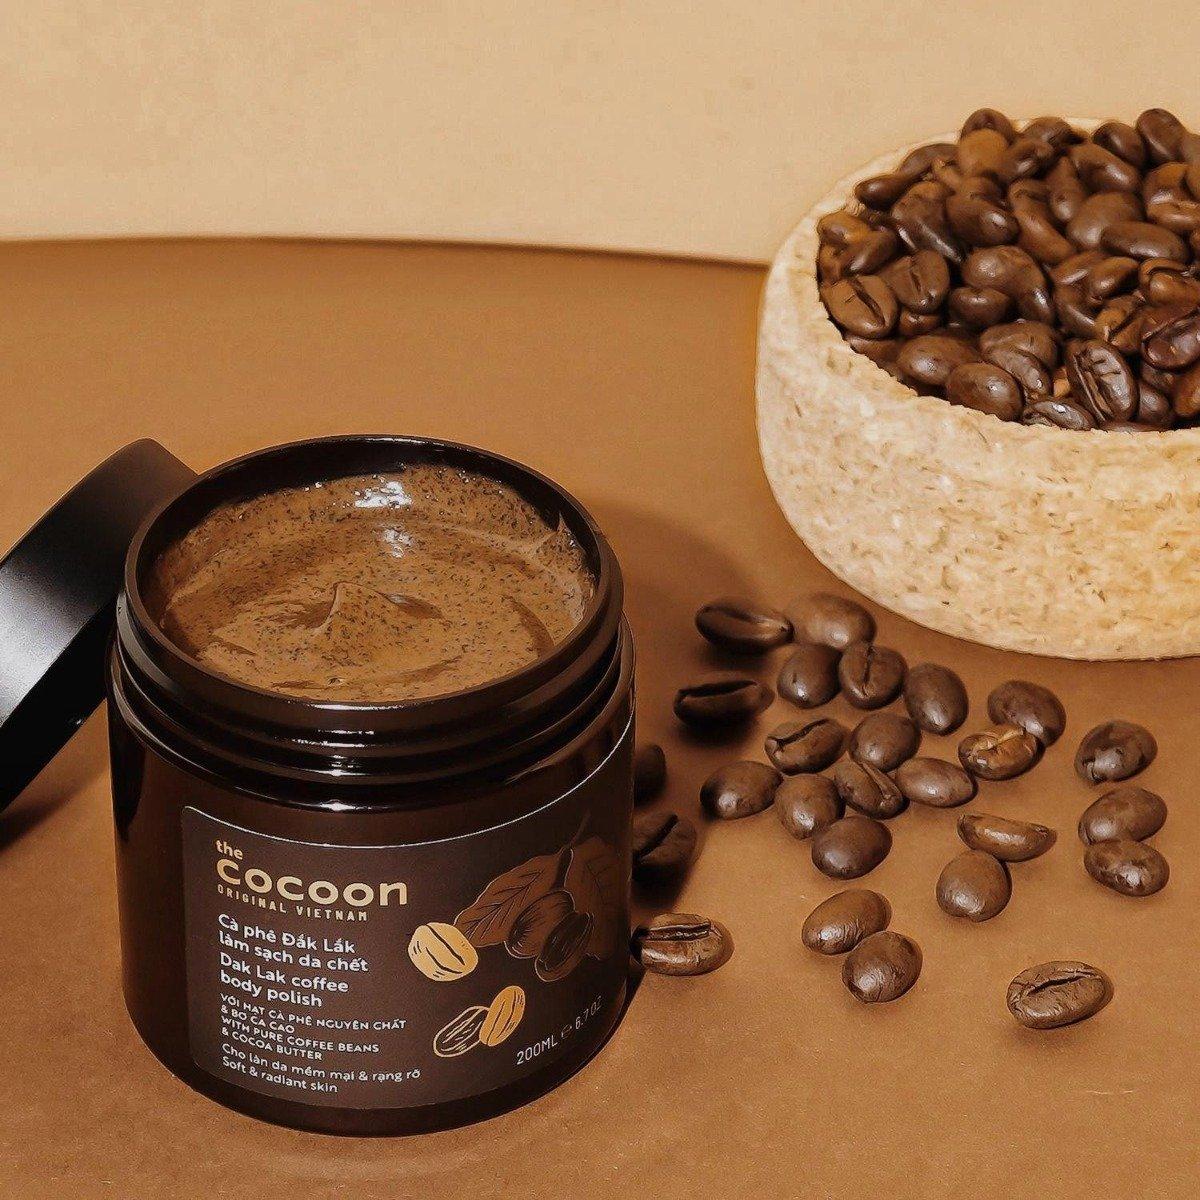 Sản phẩm tẩy da chết Cafe Đắk Lắk Cocoon được chiết xuất hoàn toàn từ tự nhiên